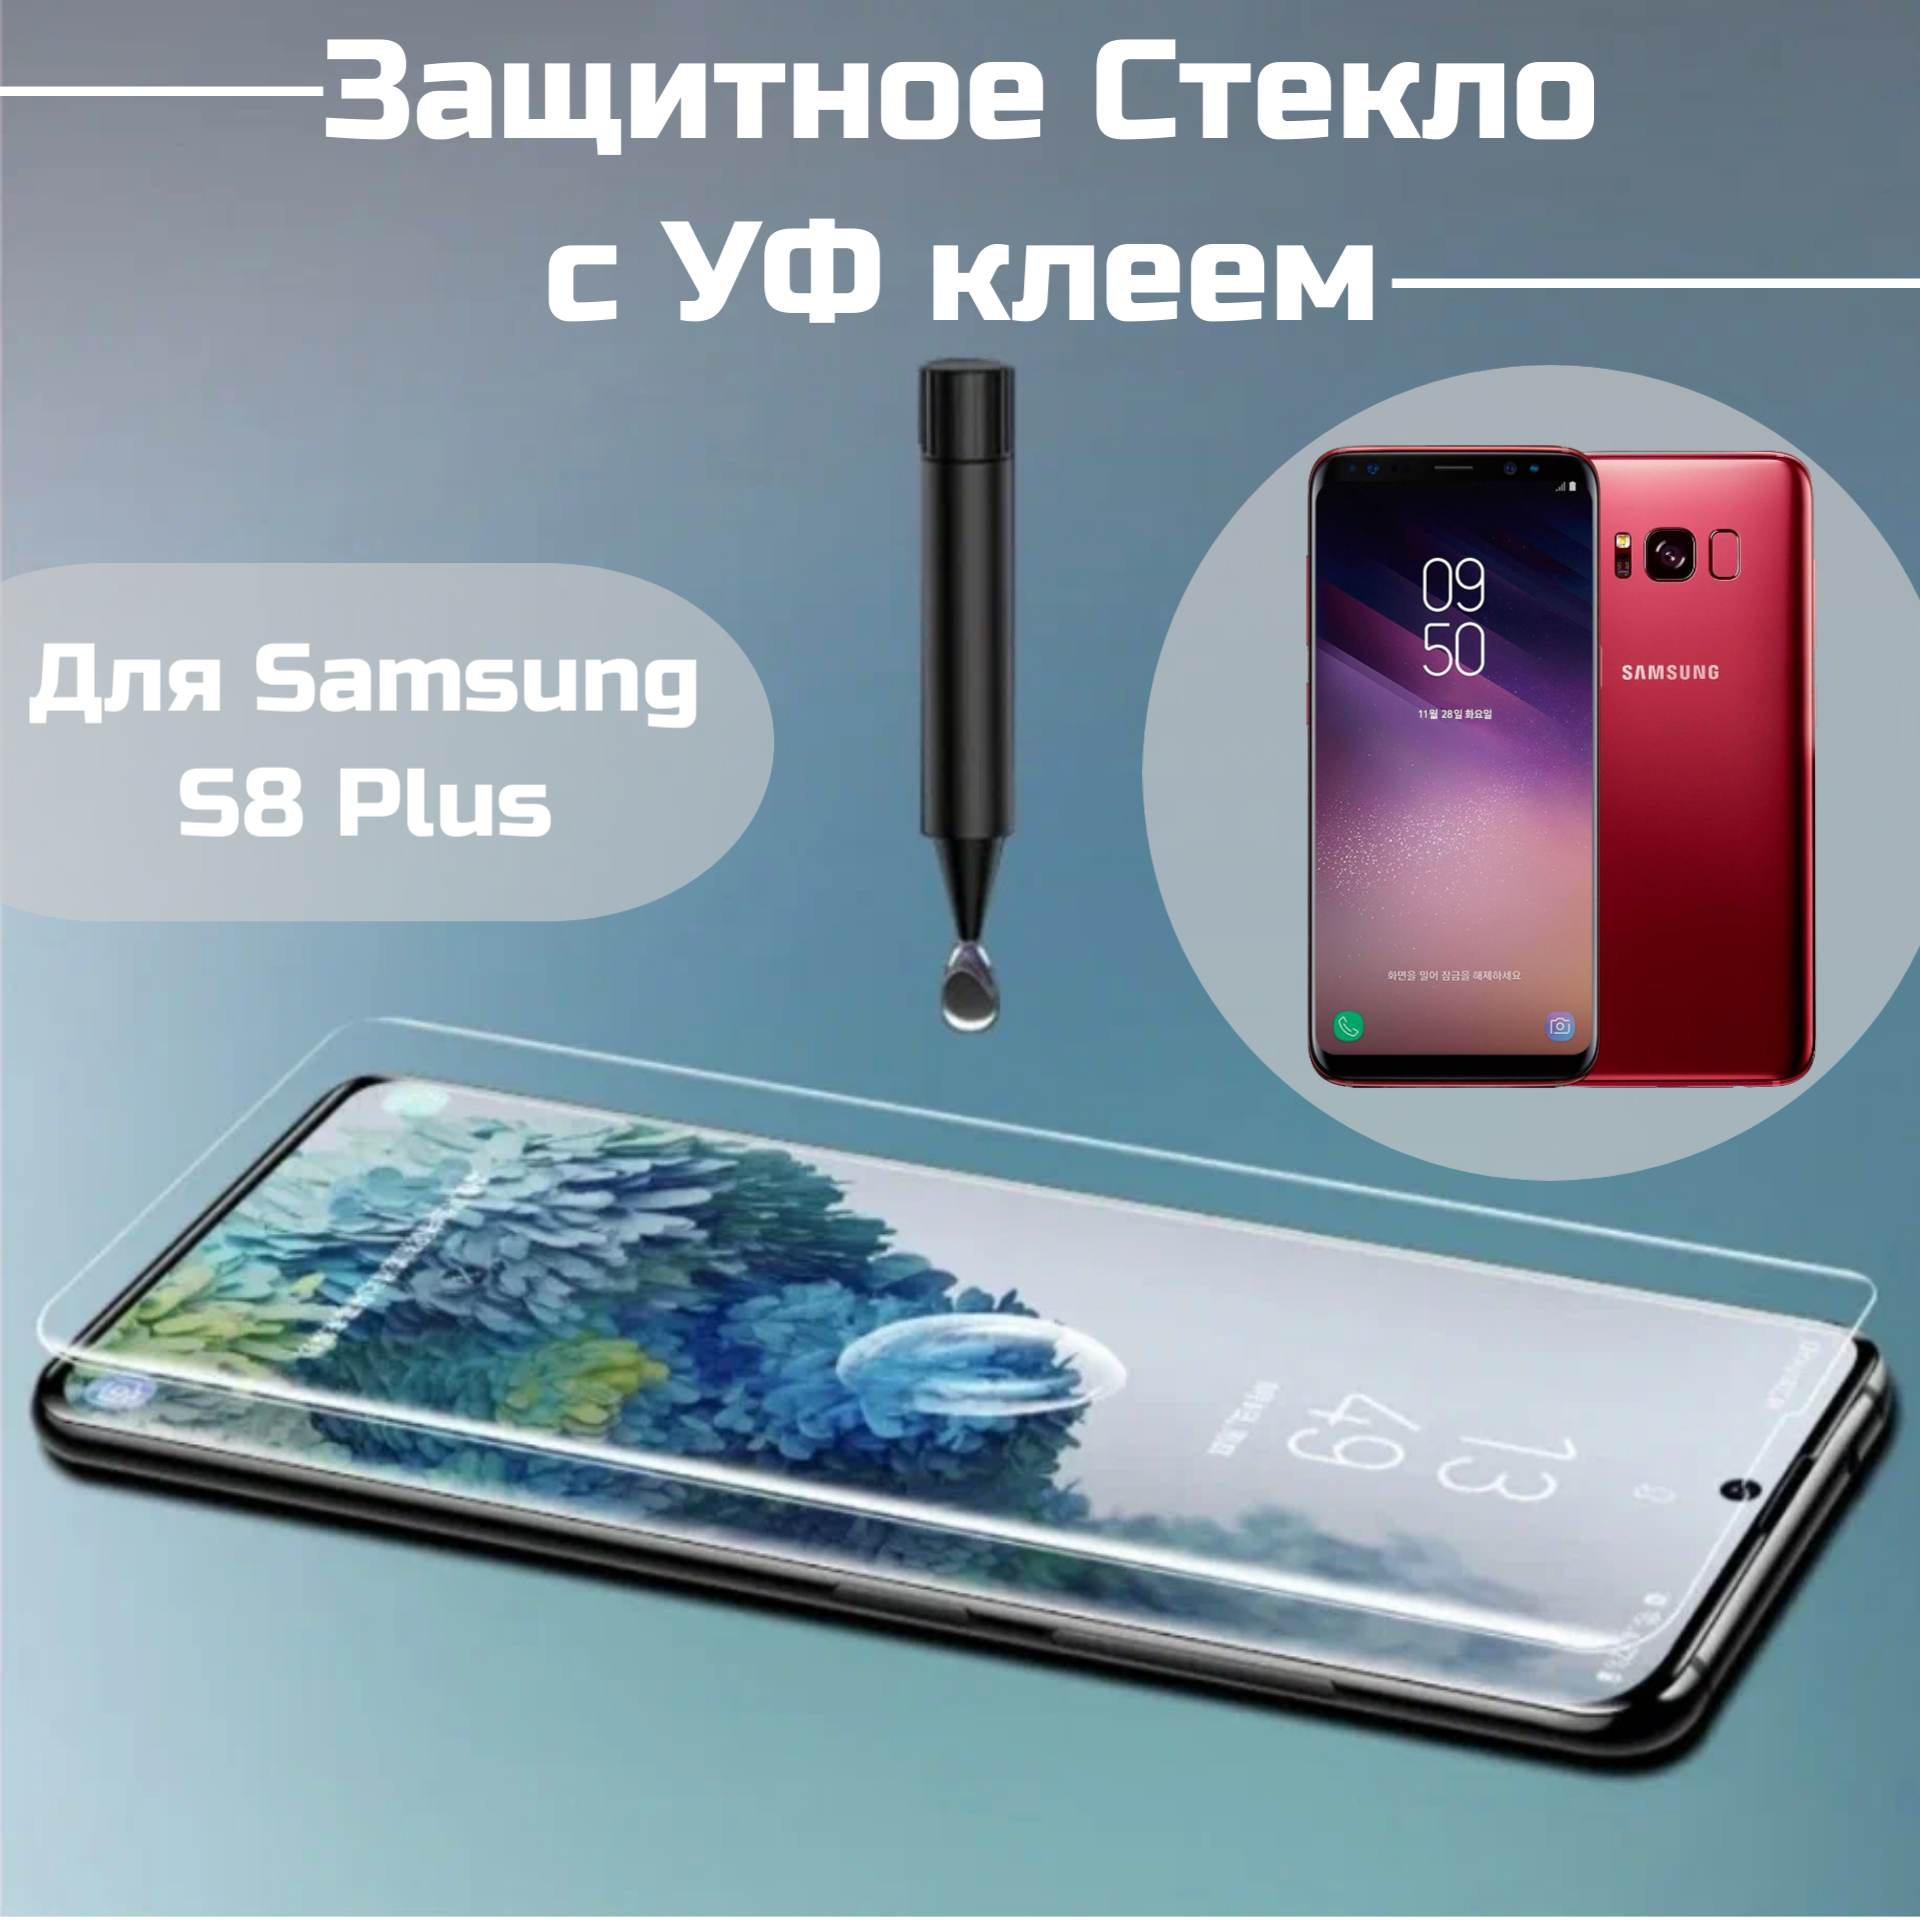 Защитное стекло для Samsung Galaxy S8 plus S8+ с УФ клеем и лампой